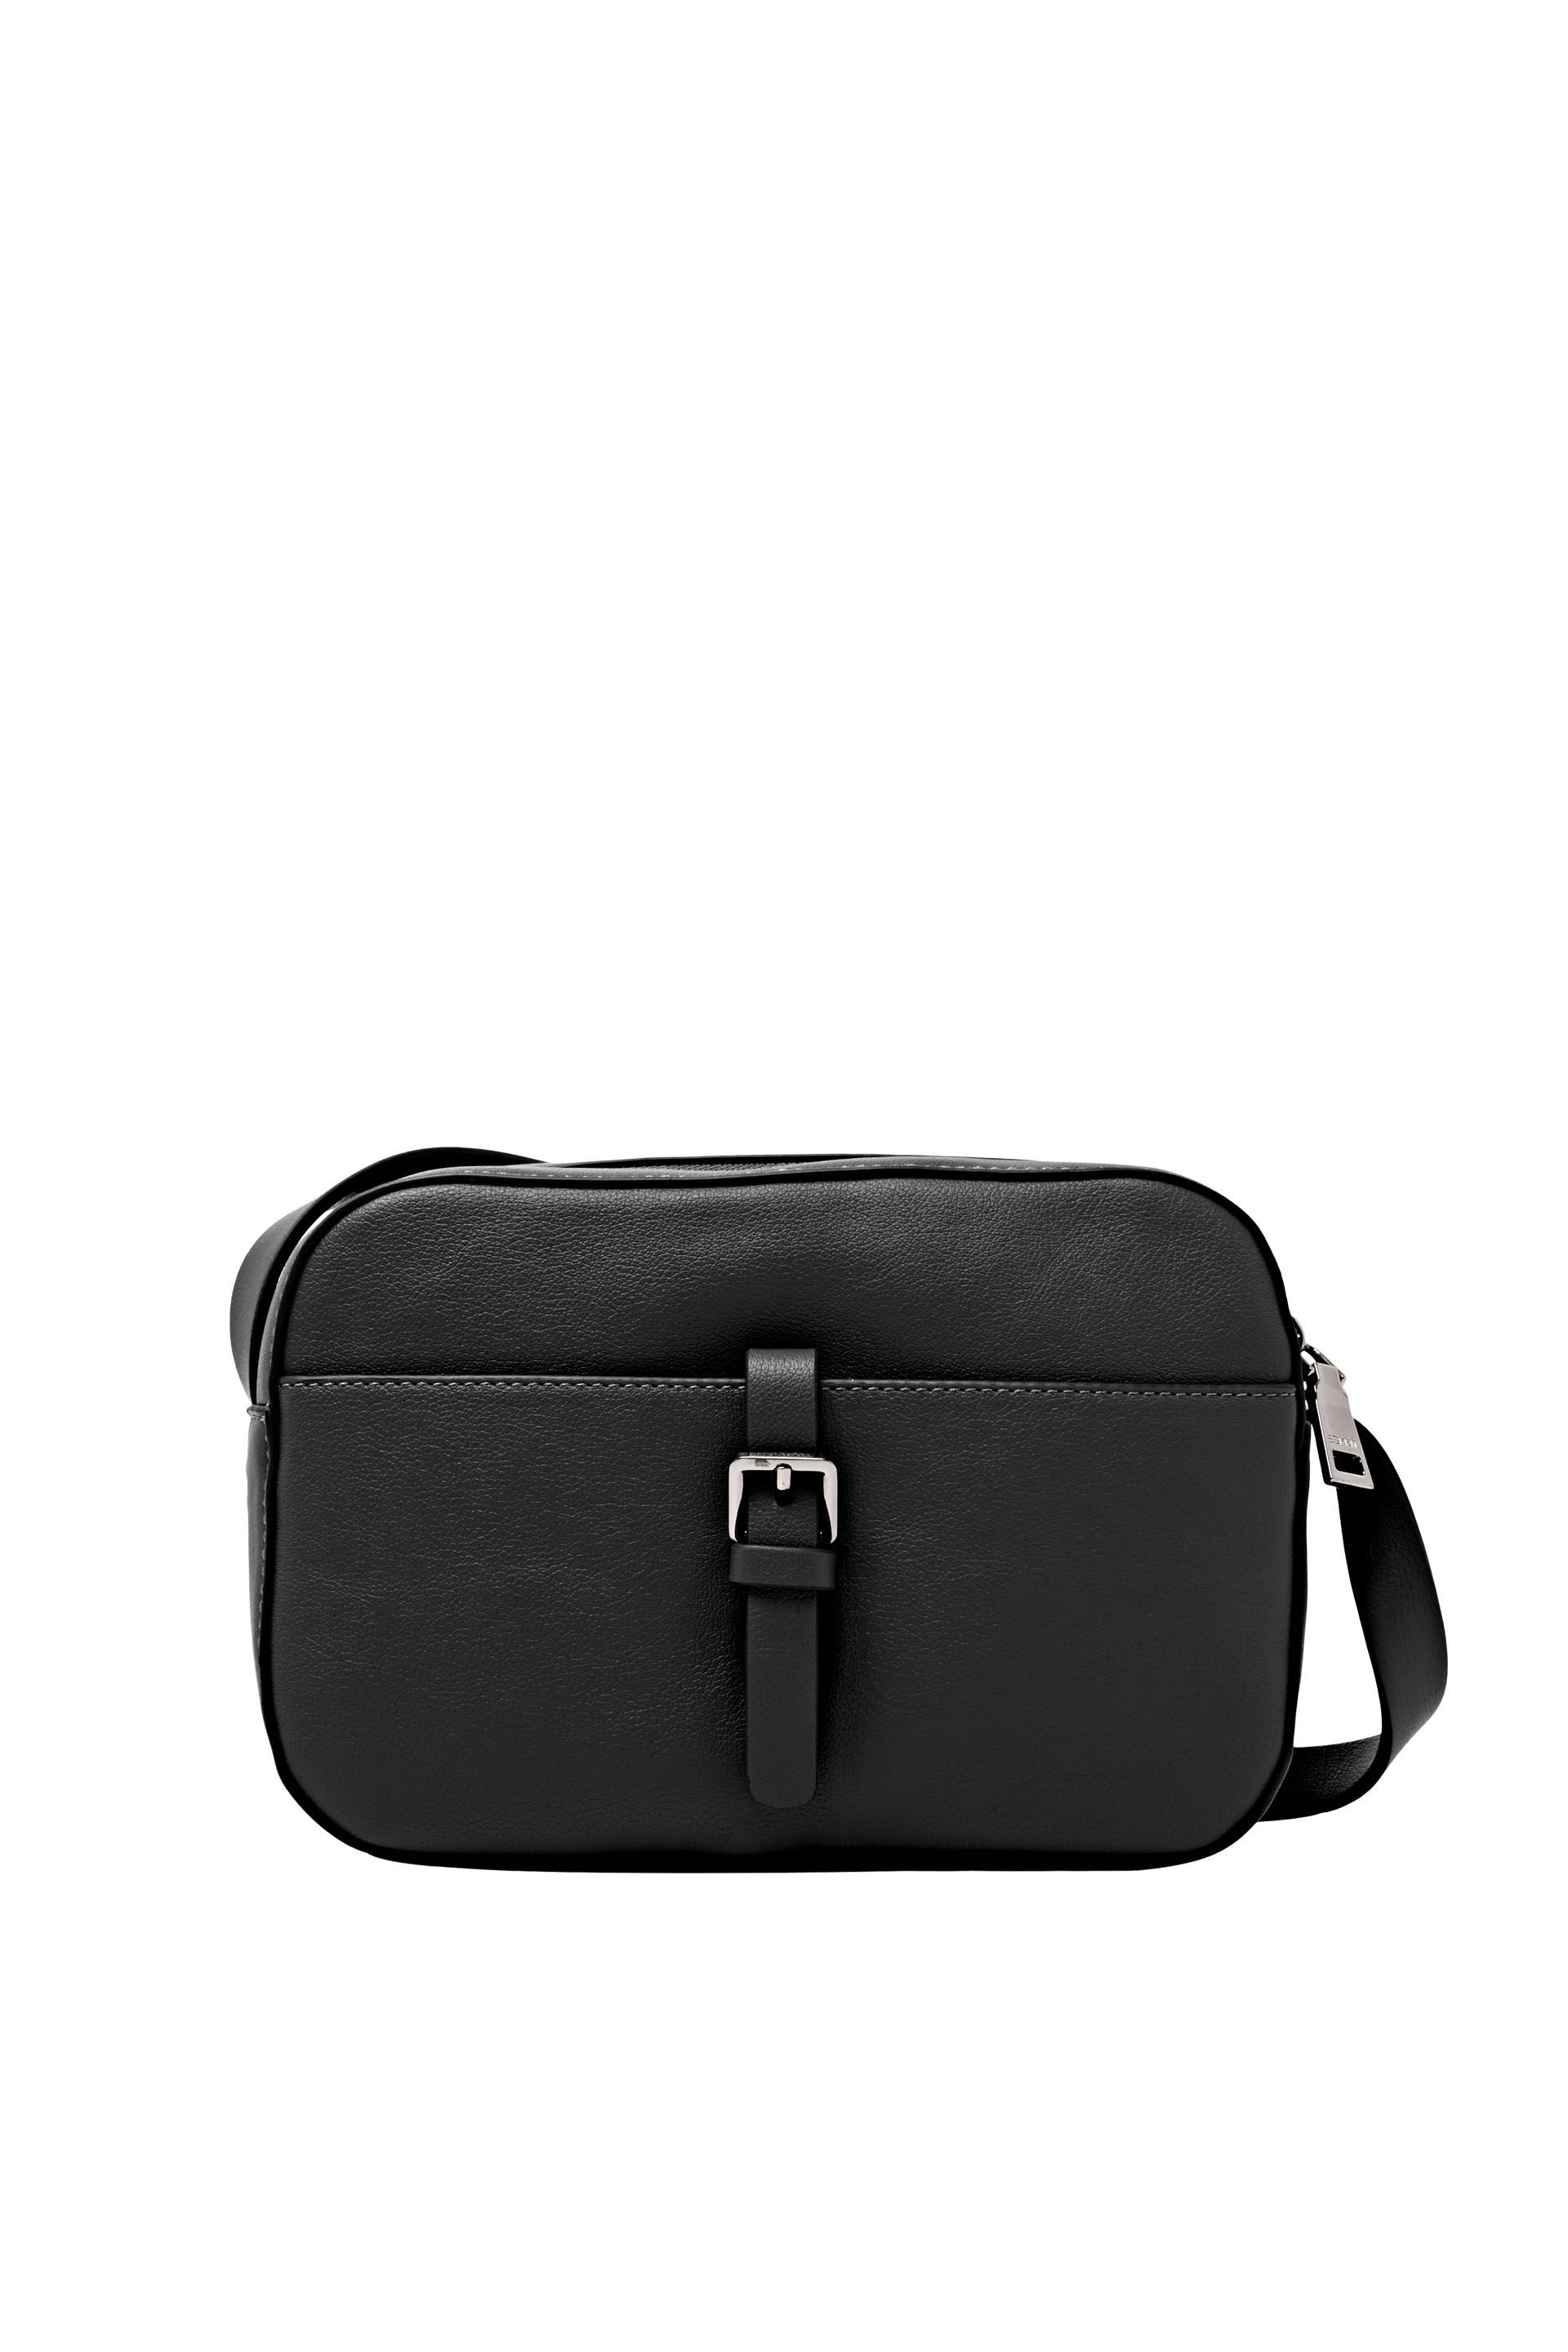 Leatherette shoulder bag, Black, large image number 0